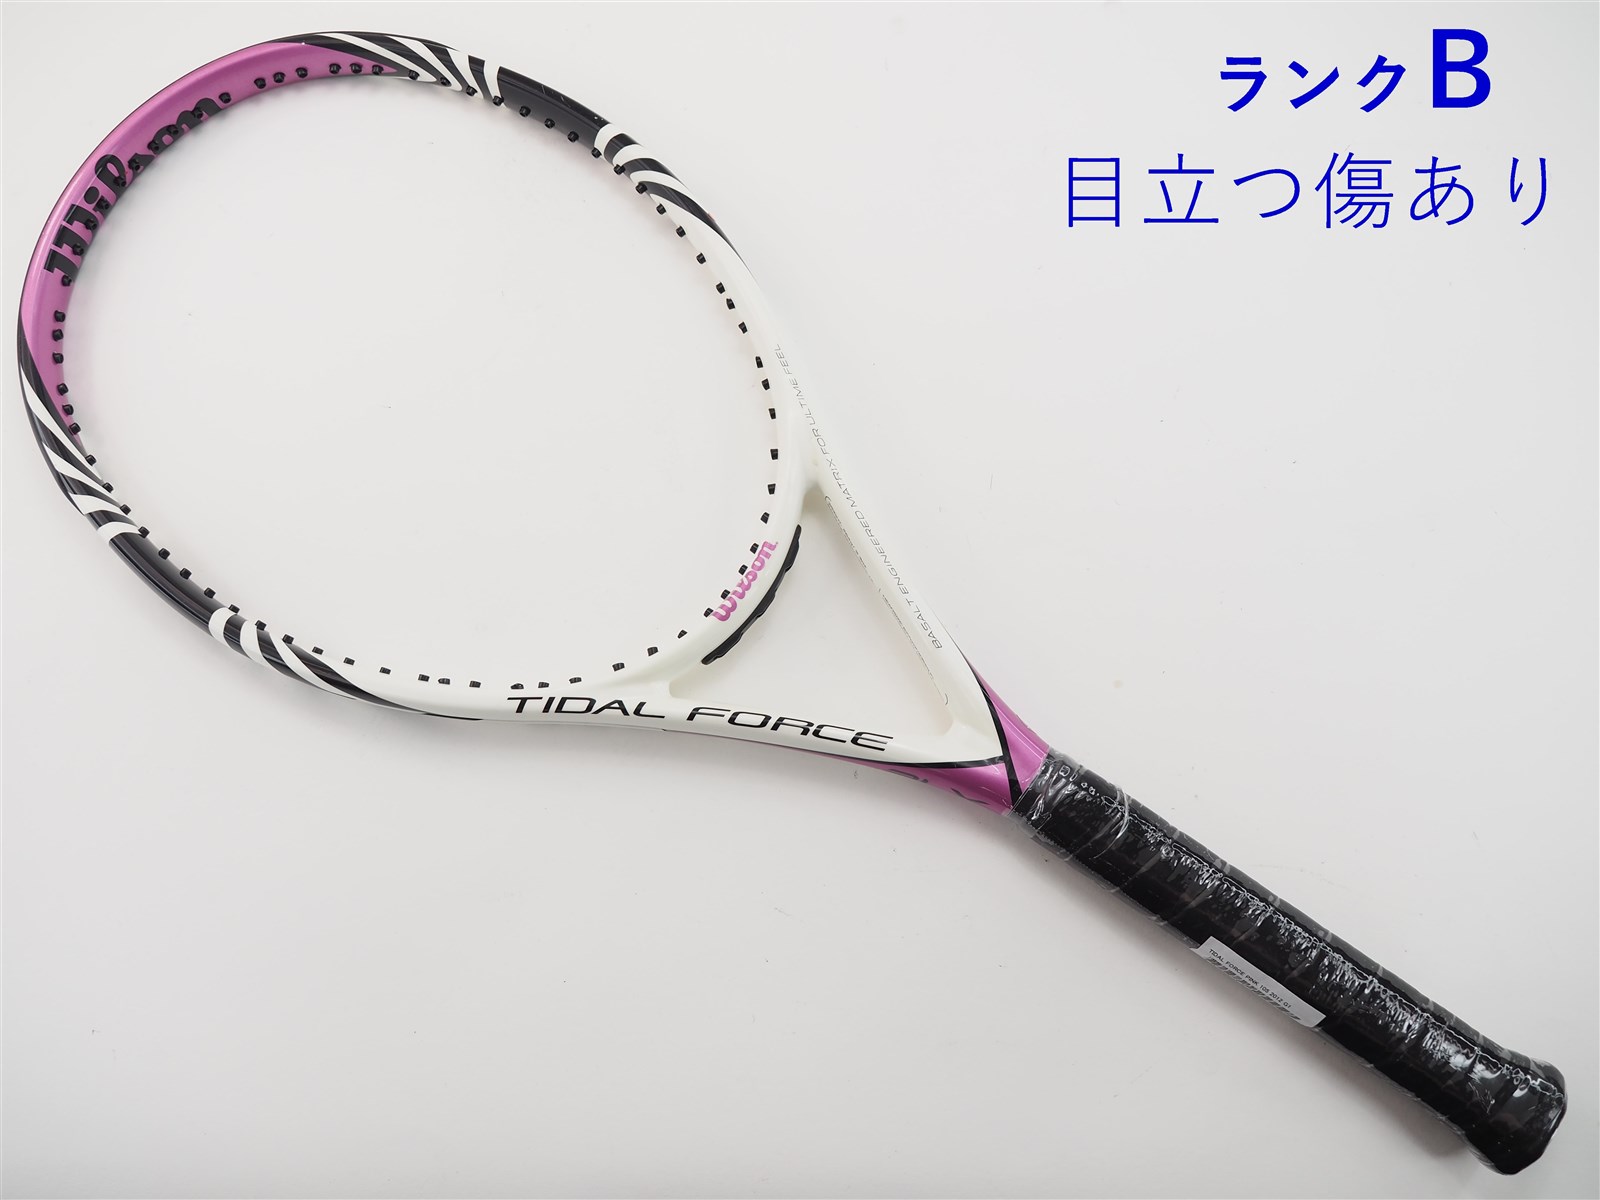 【中古】ウィルソン タイダル フォース ピンク 105 2012年モデルWILSON TIDAL FORCE PINK 105 2012(G1)【中古  テニスラケット】【送料無料】 テニス